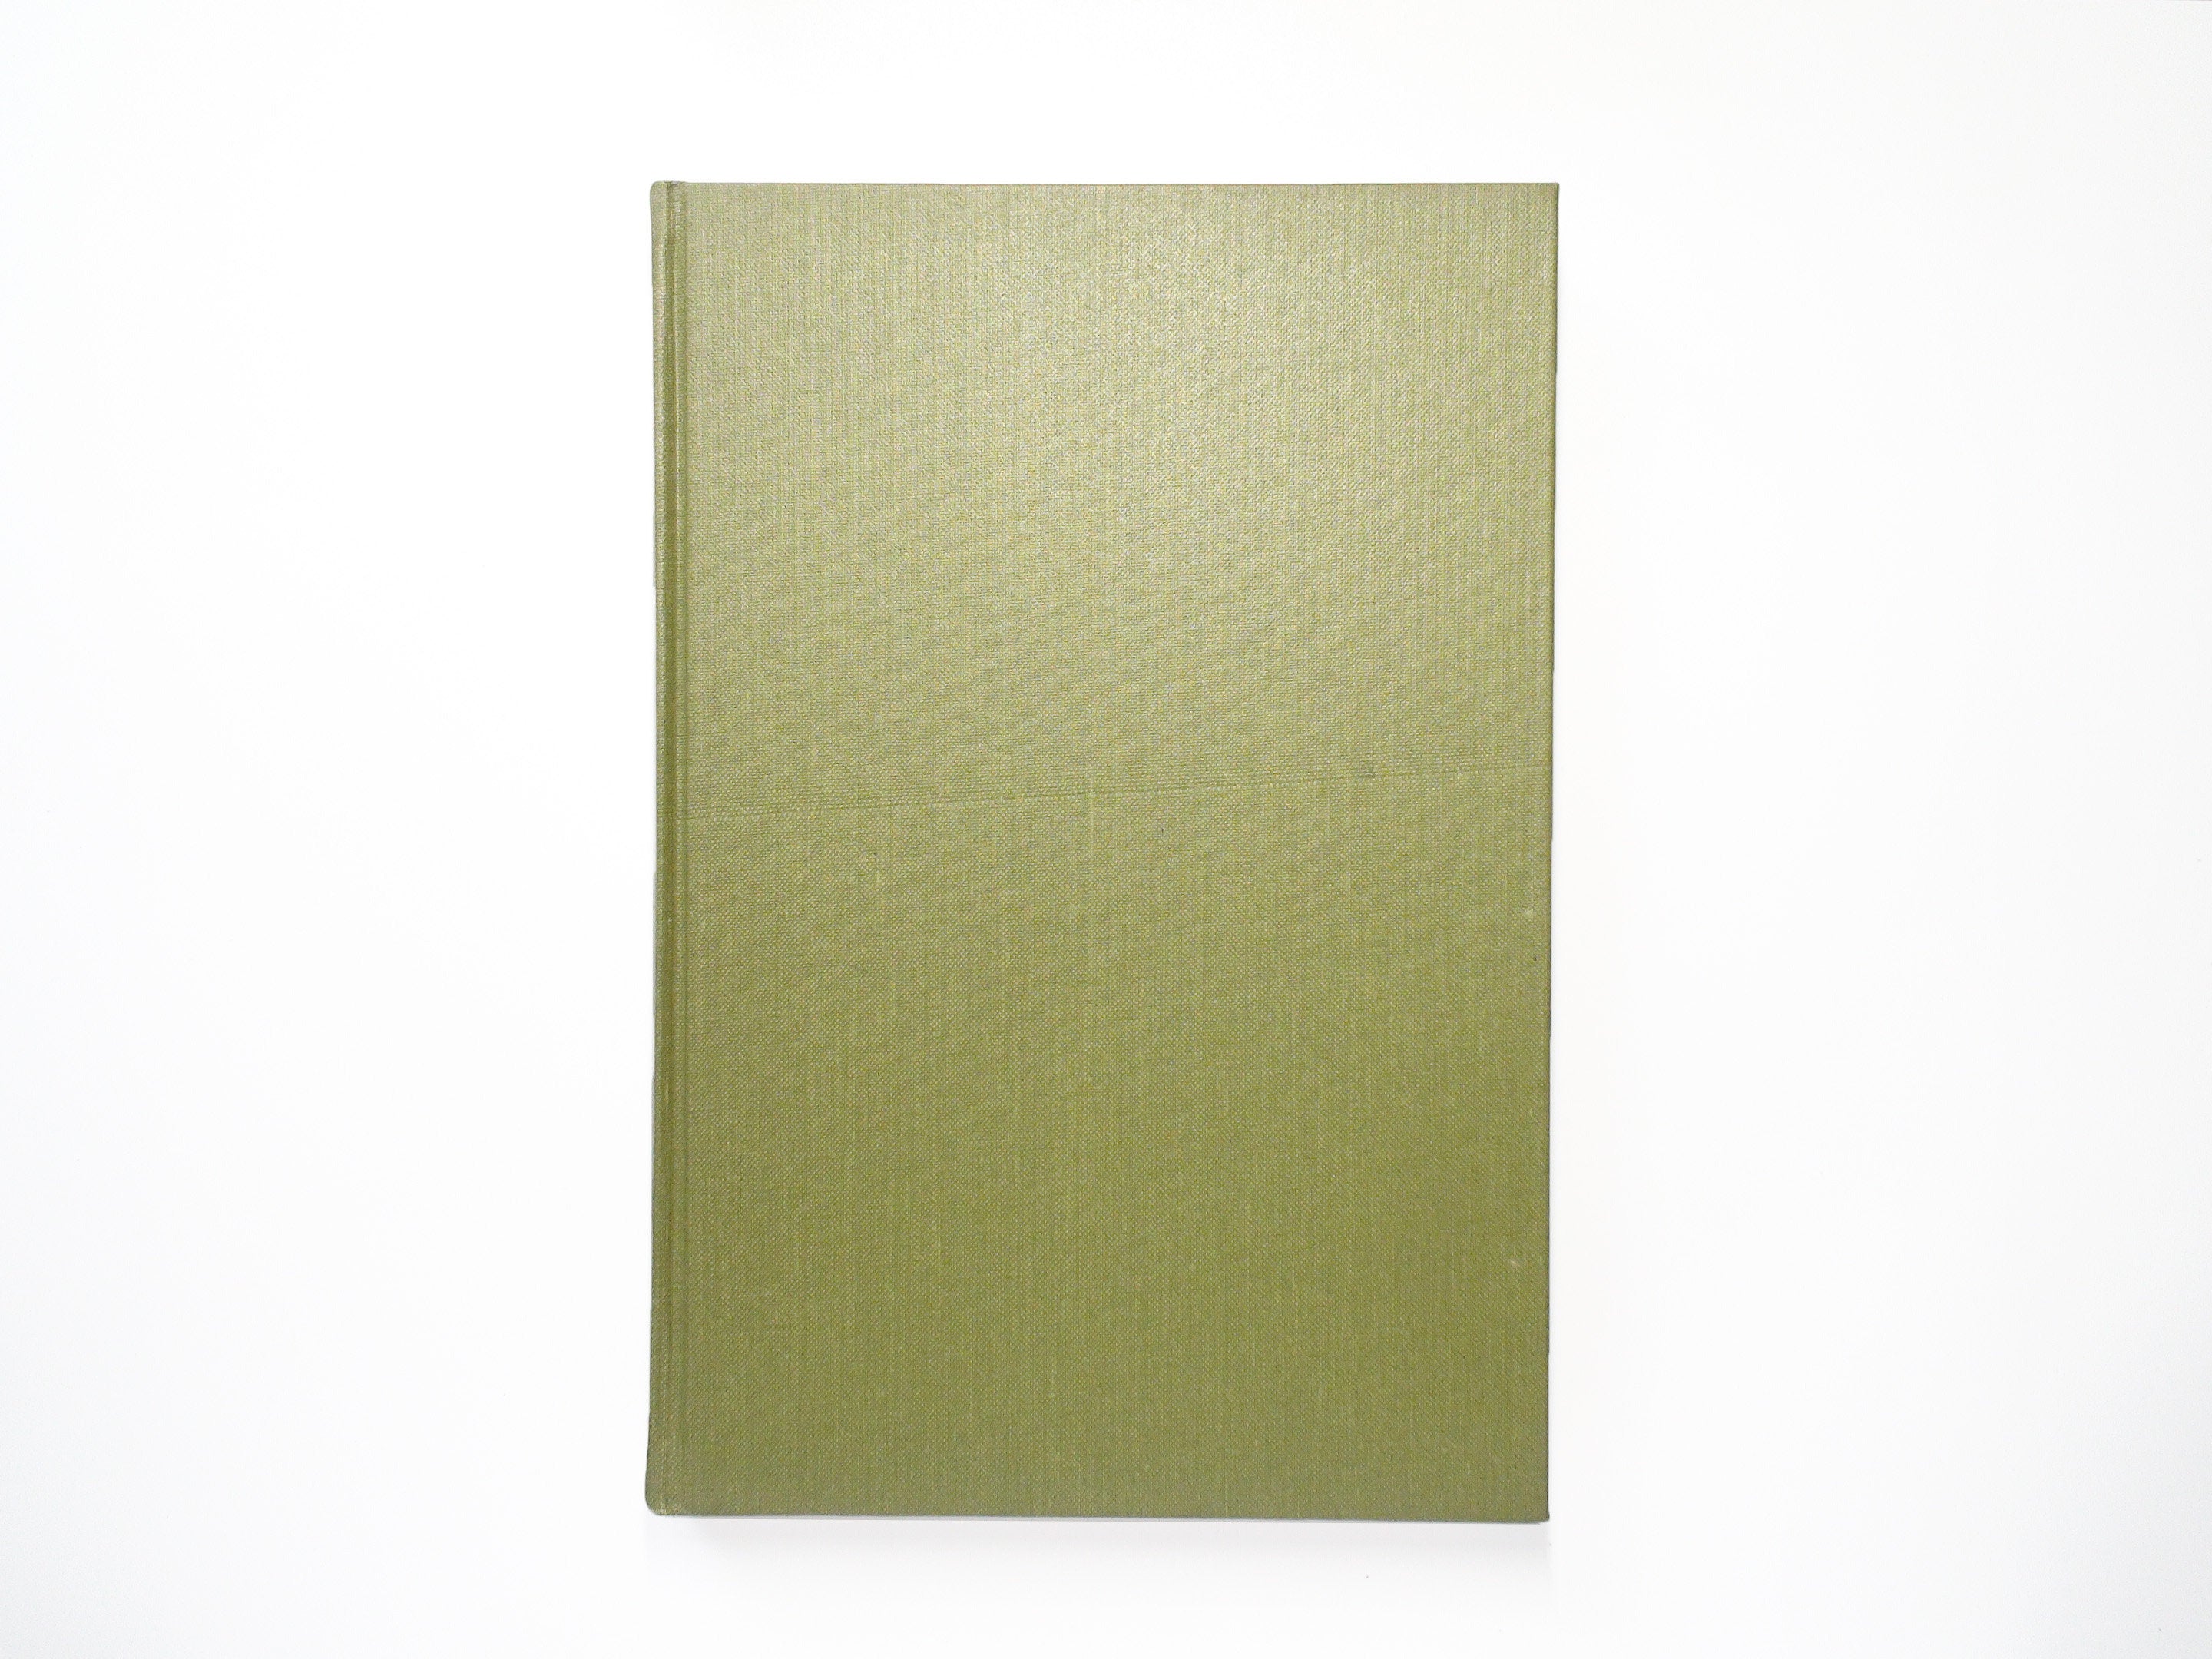 Catalogue of Books and Manuscripts by Rupert Brooke, John Schroder, 1st Ed, 1970